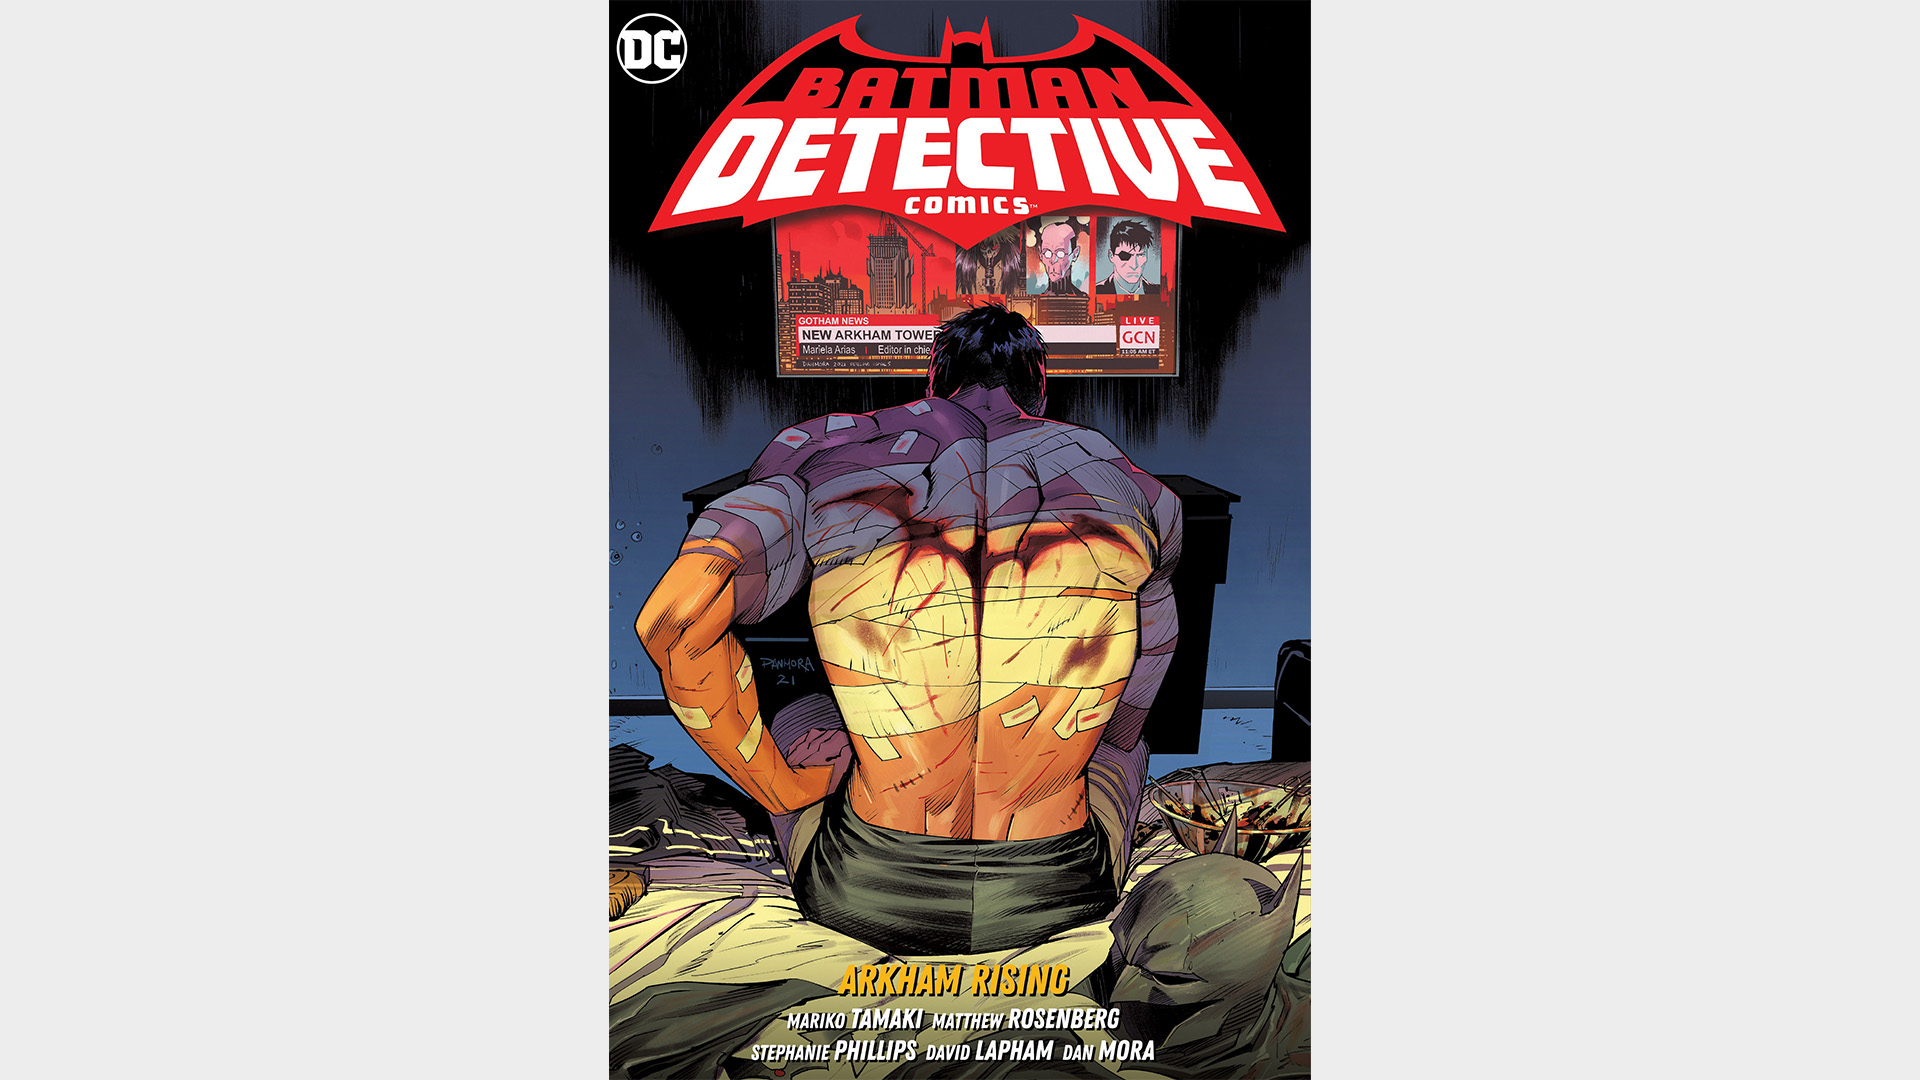 BATMAN : DETECTIVE COMICS VOL. 3 : ARKHAM RISING